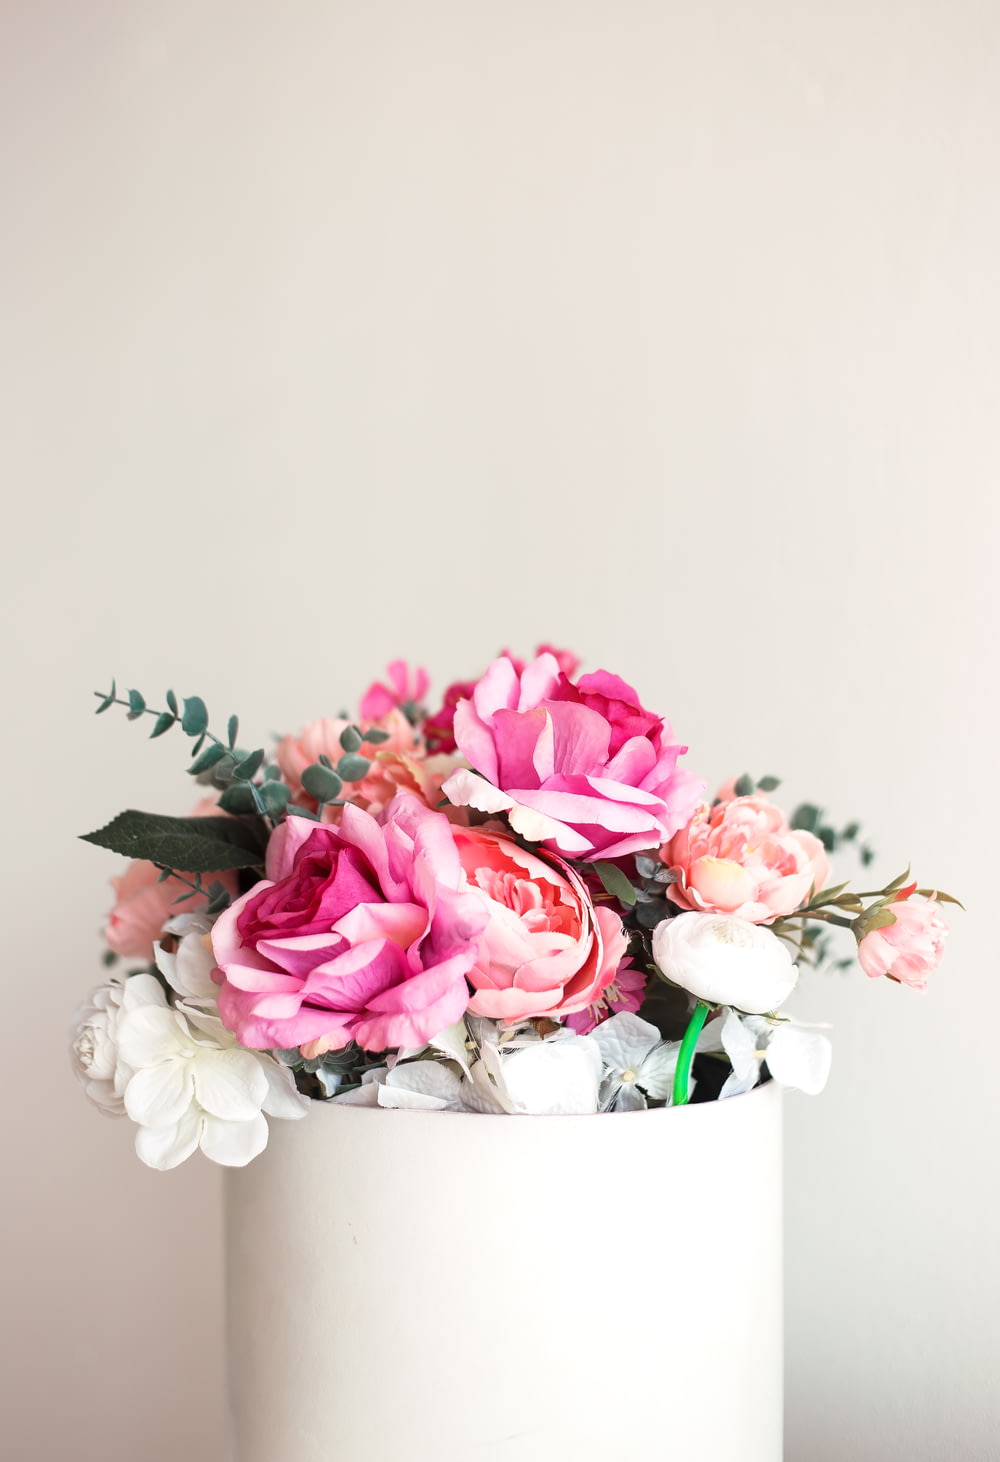 flores de pétalas brancas e cor-de-rosa